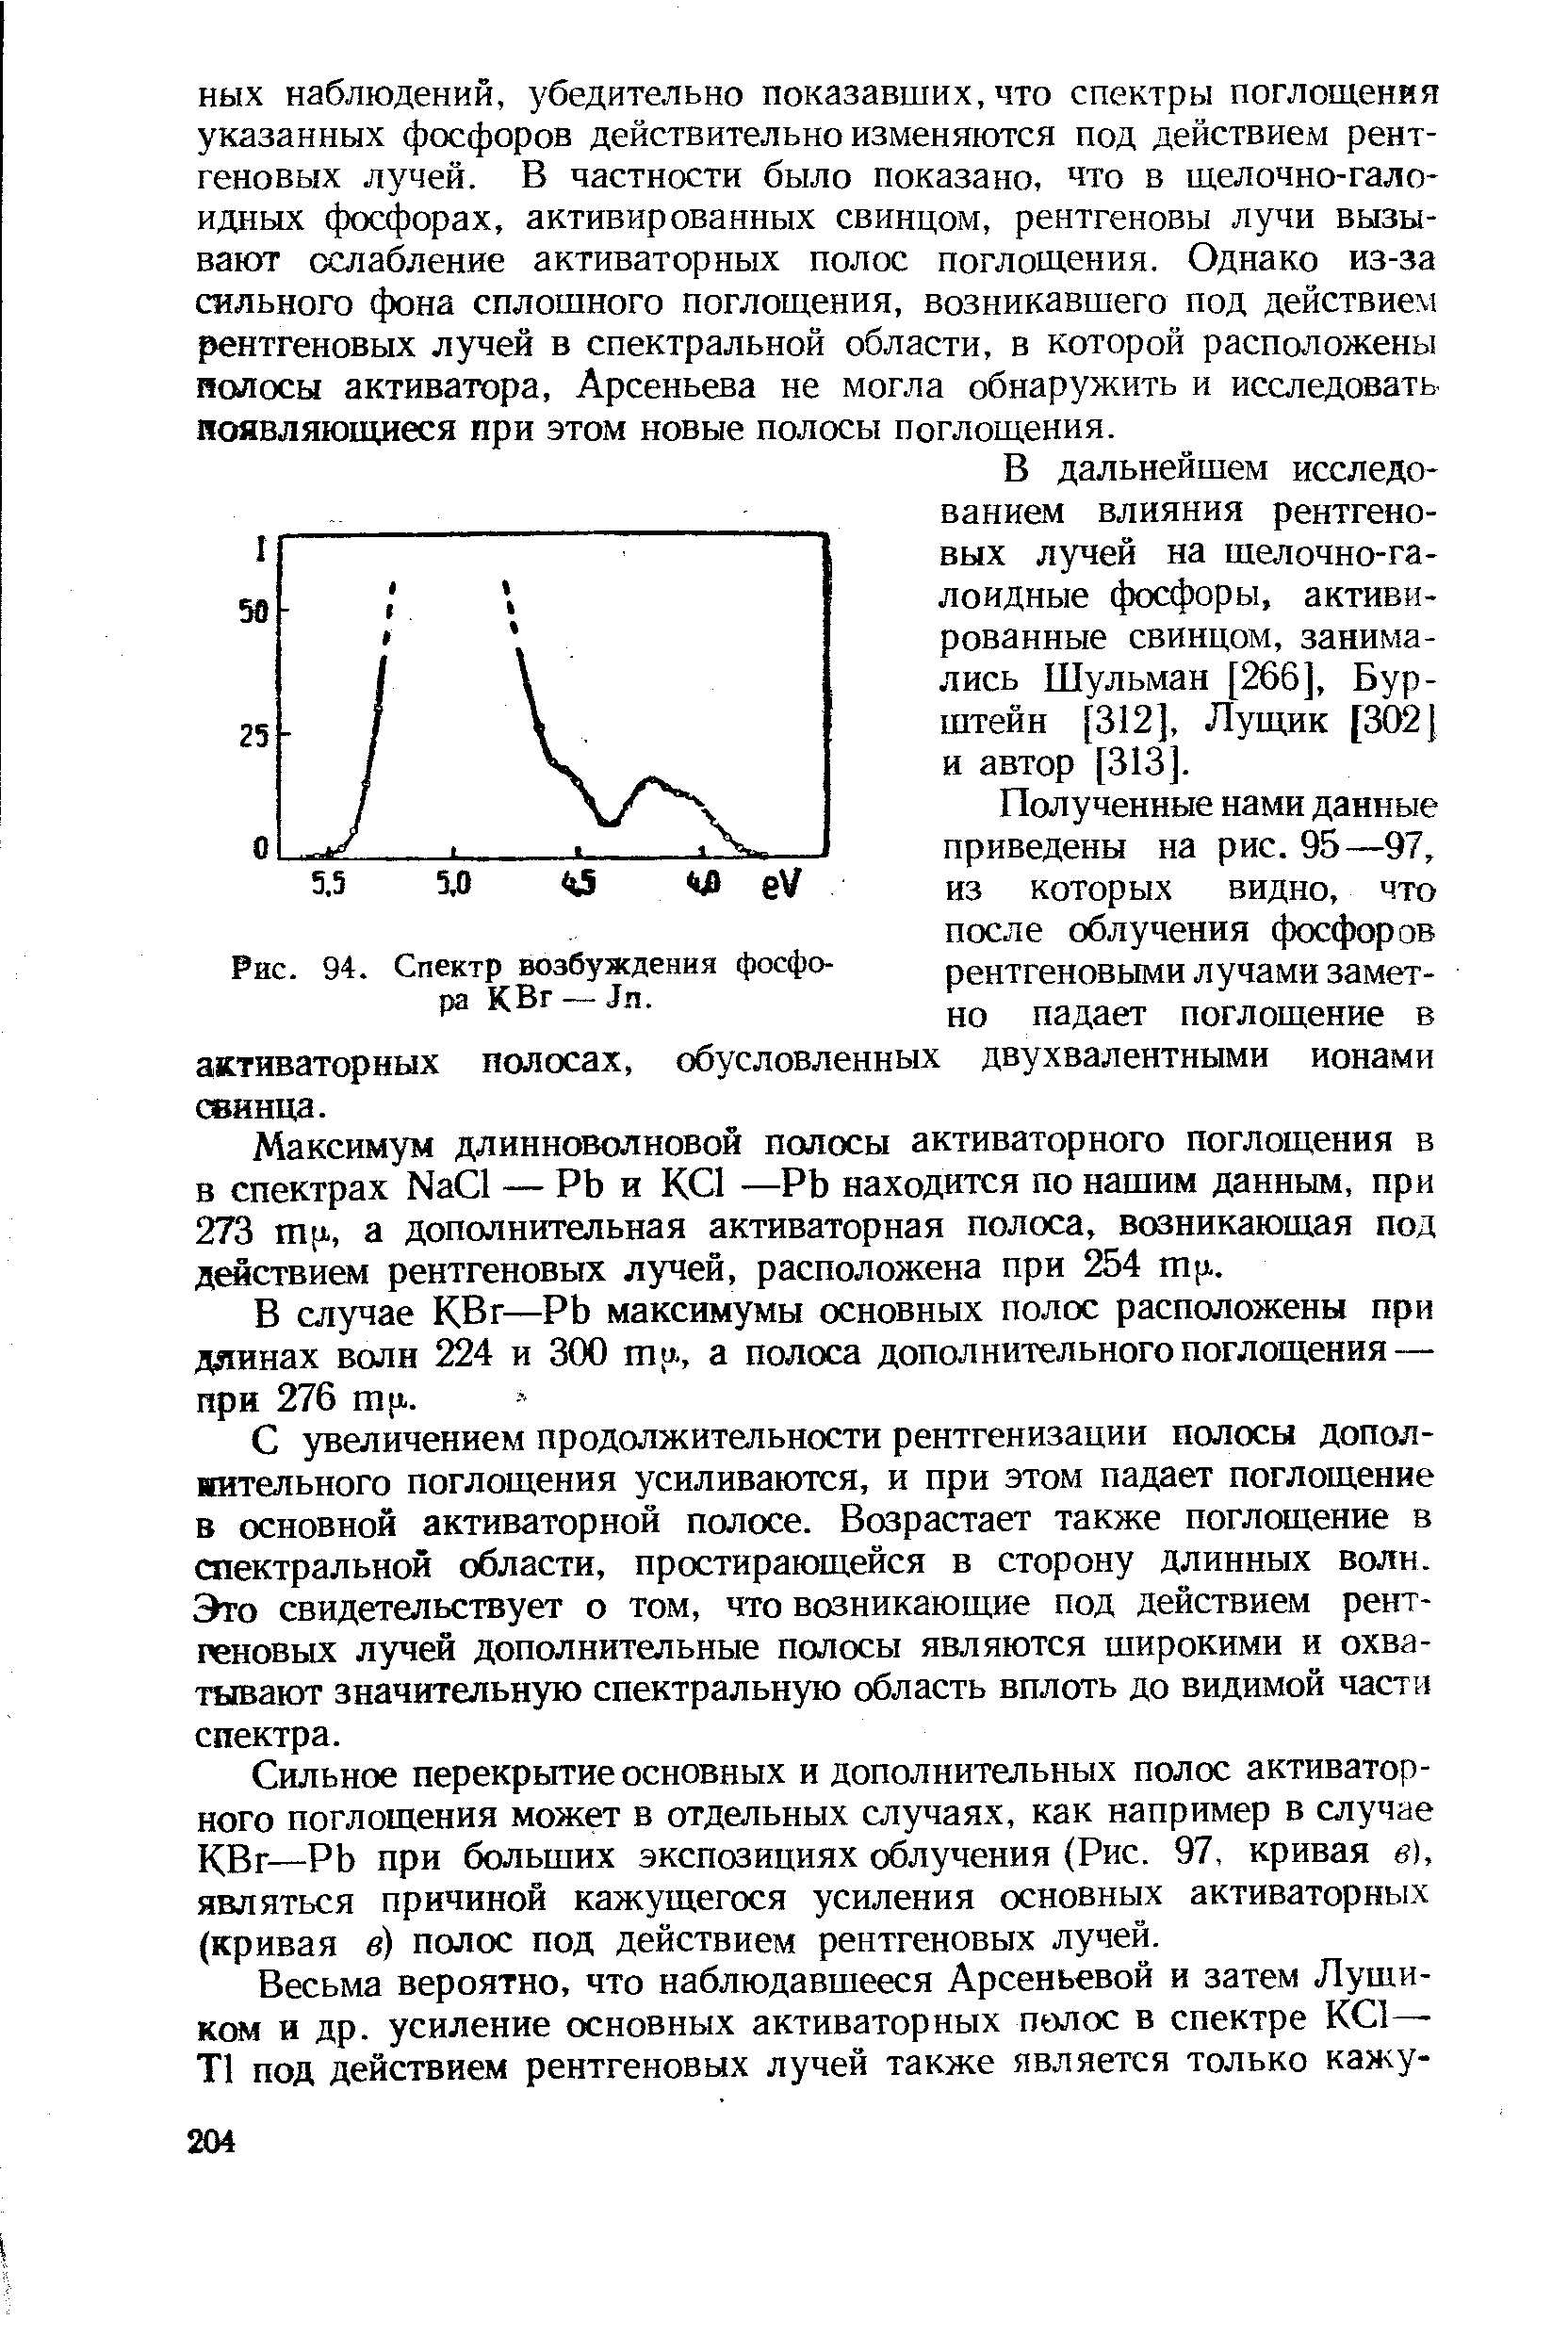 В дальнейшем исследованием влияния рентгеновых лучей на шелочно-галоидные фосфоры, активированные свинцом, занимались Шульман [266], Бурштейн [312], Лущик [302] и автор [313].